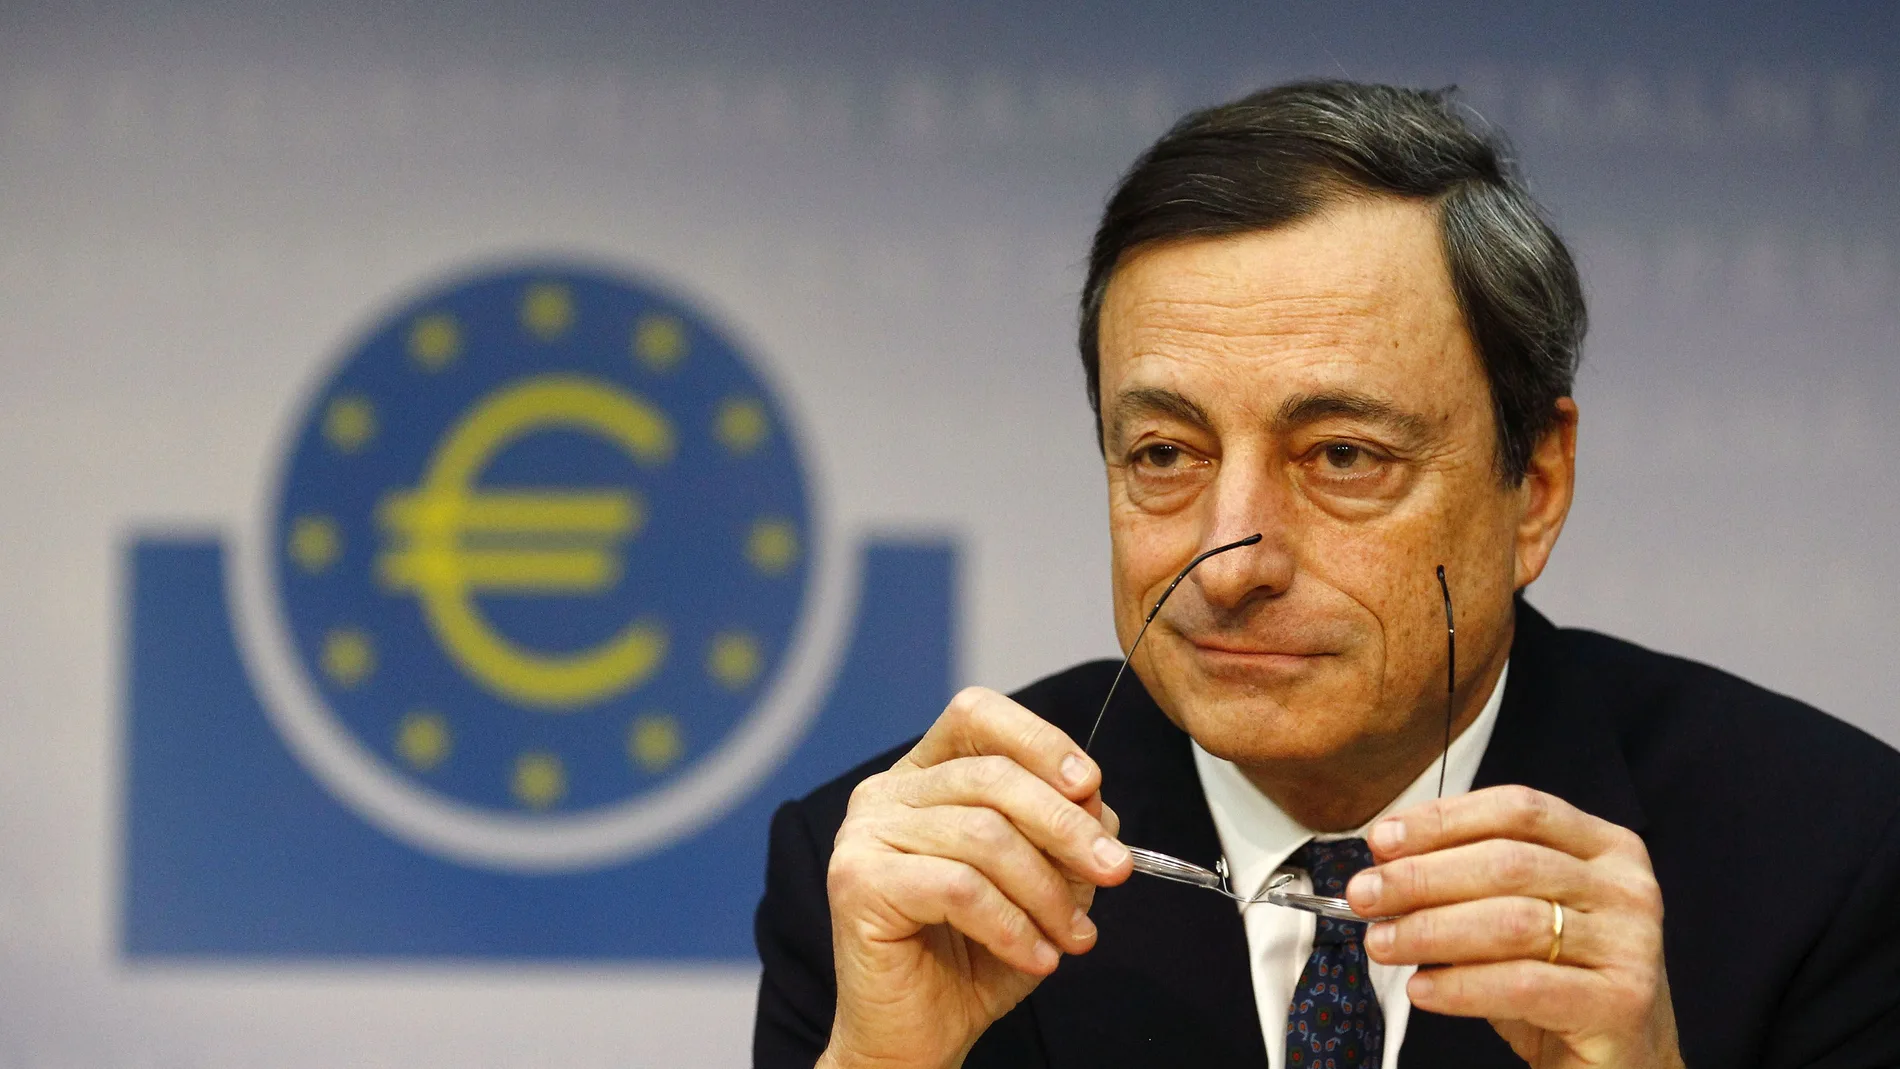 Mario Draghi en una conferencia de prensa como presidente del BCE en Fráncfort